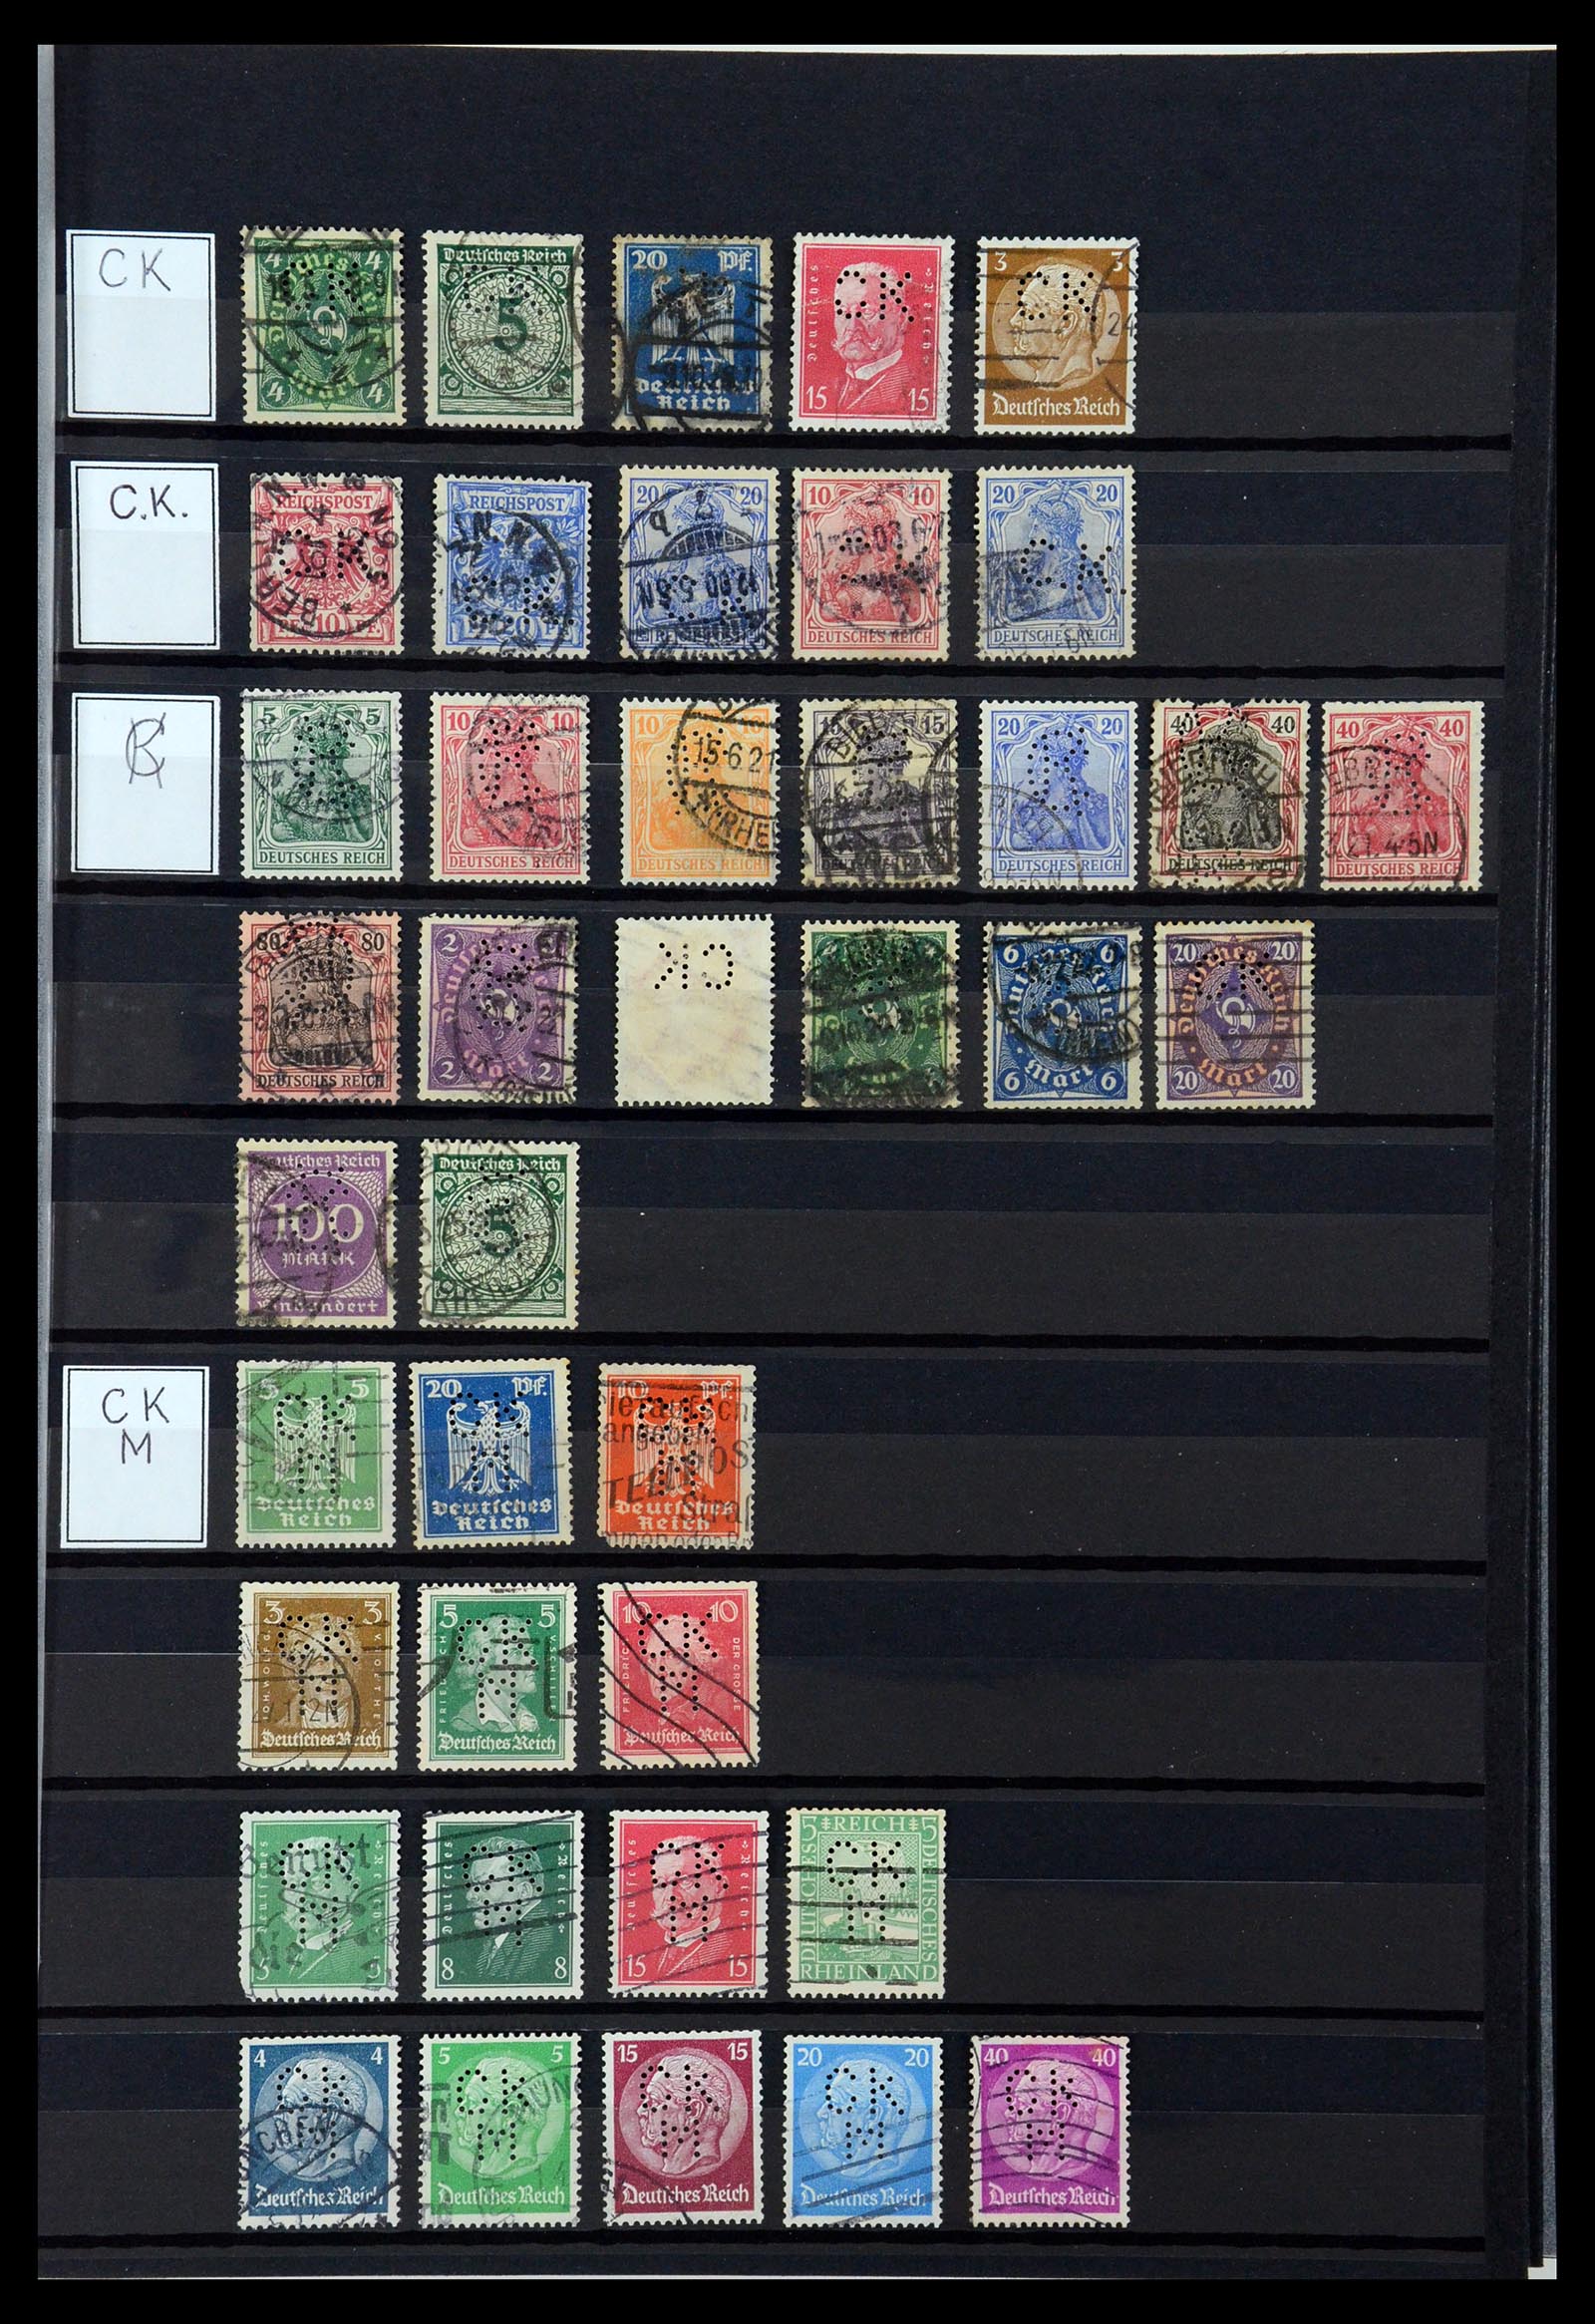 36405 073 - Stamp collection 36405 German Reich perfins 1880-1945.